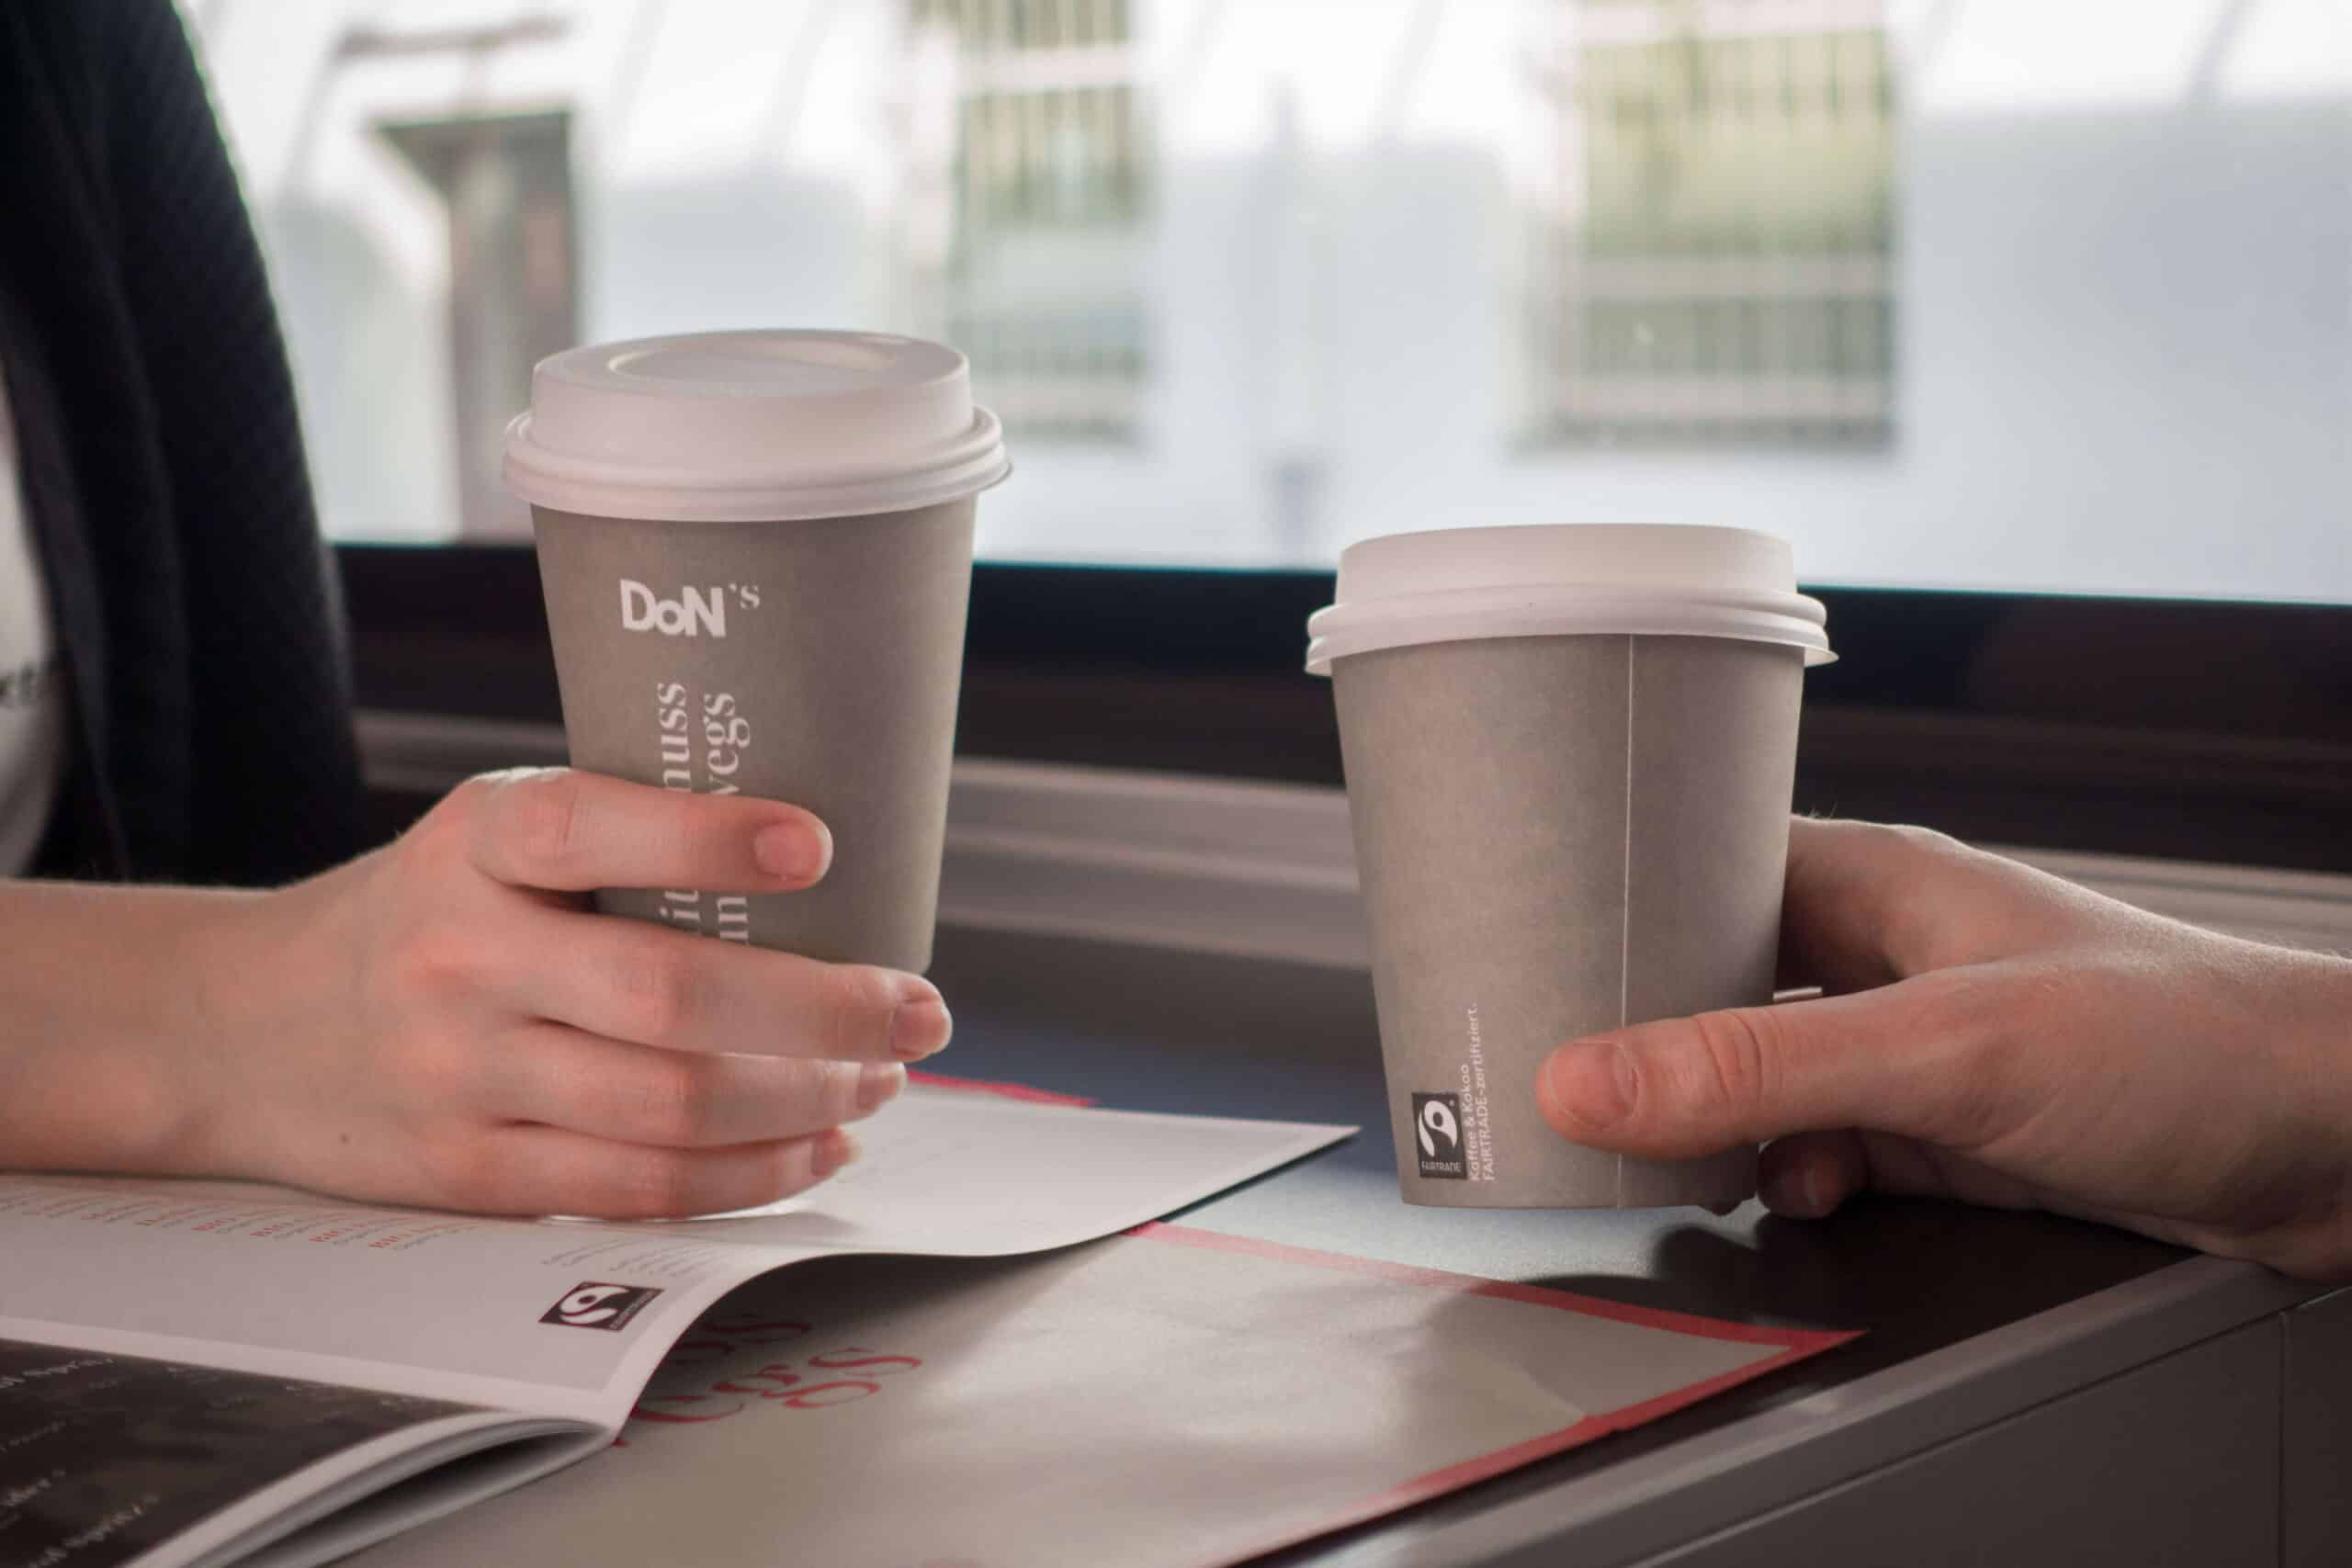 Zwei Händemit Kaffeebechern auf denen das Fairtrade-Logo zu sehen ist